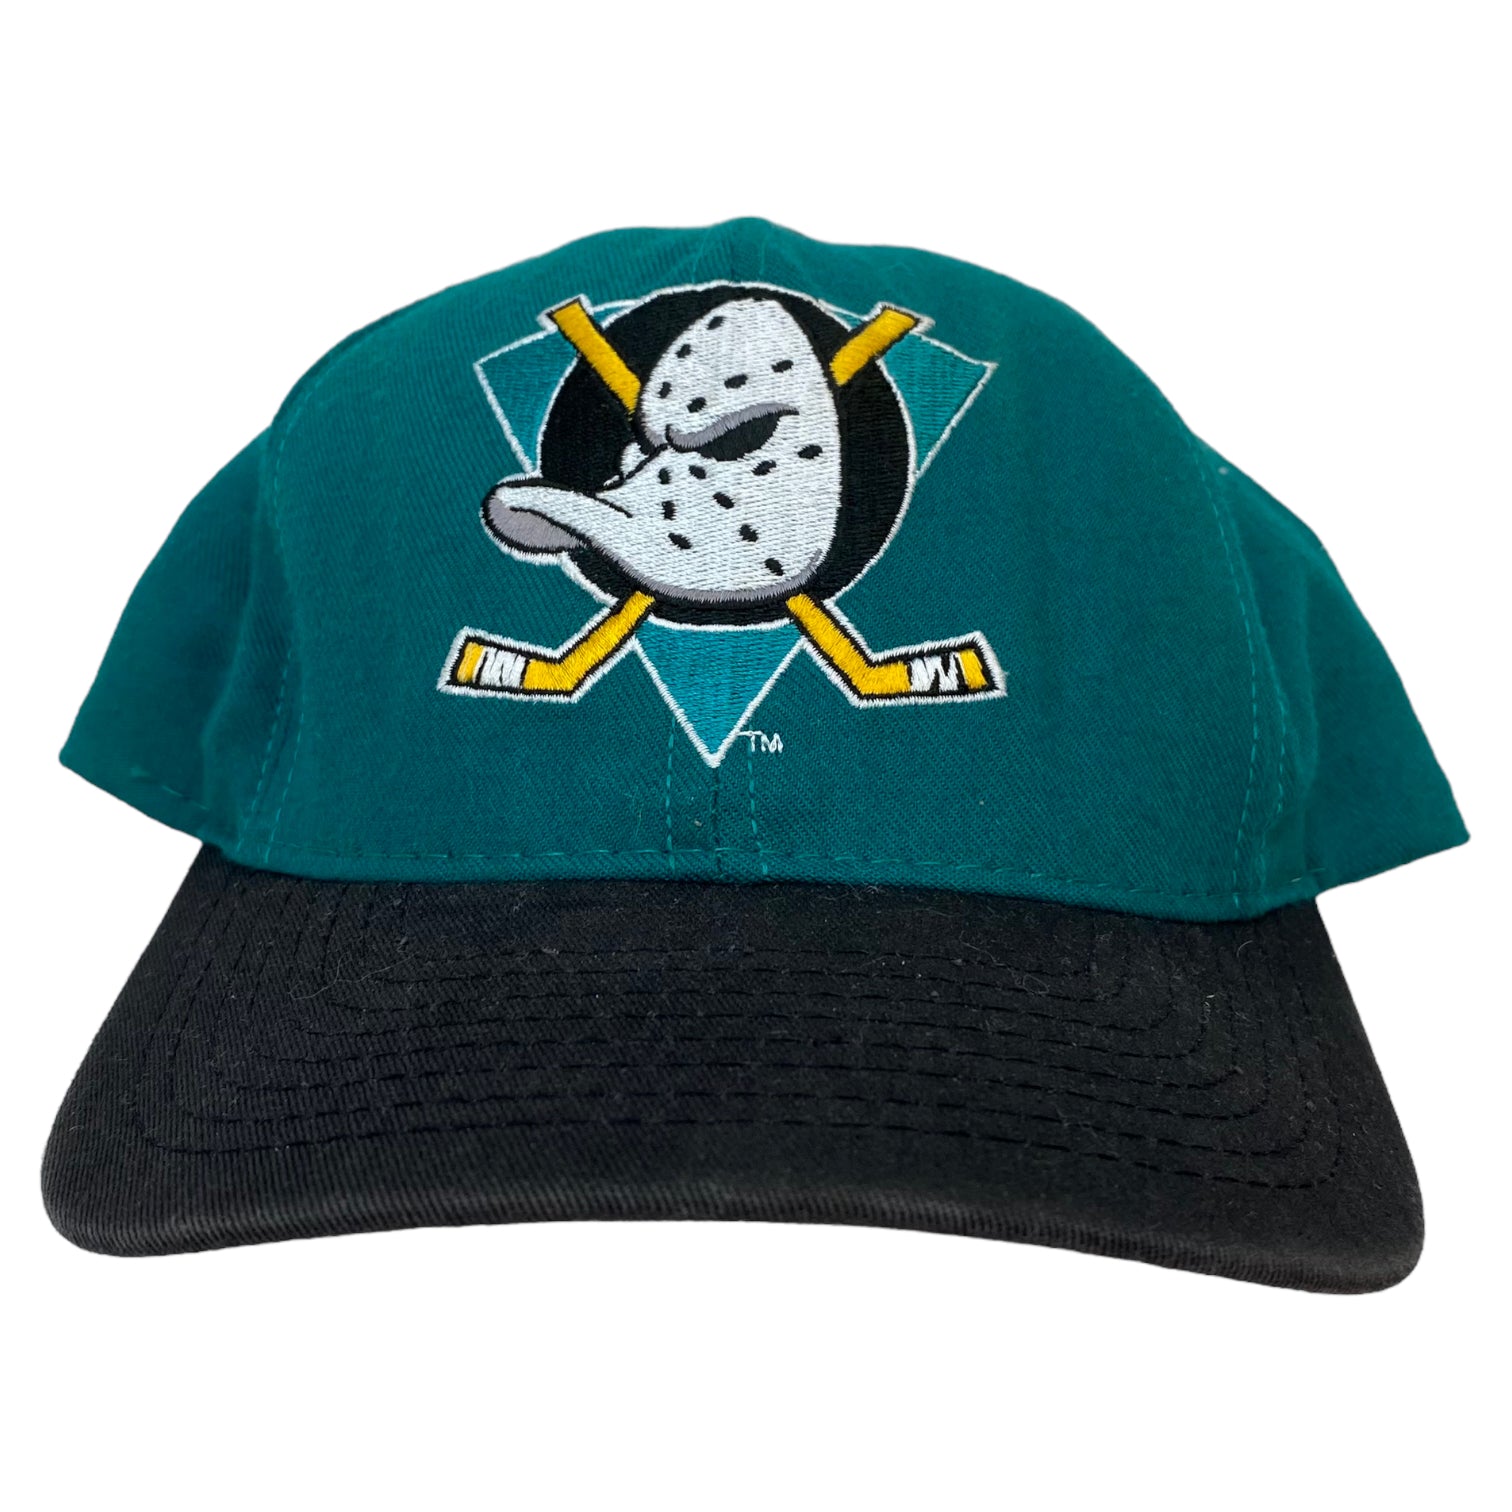 Vintage Anaheim Mighty Ducks Snapback Teal